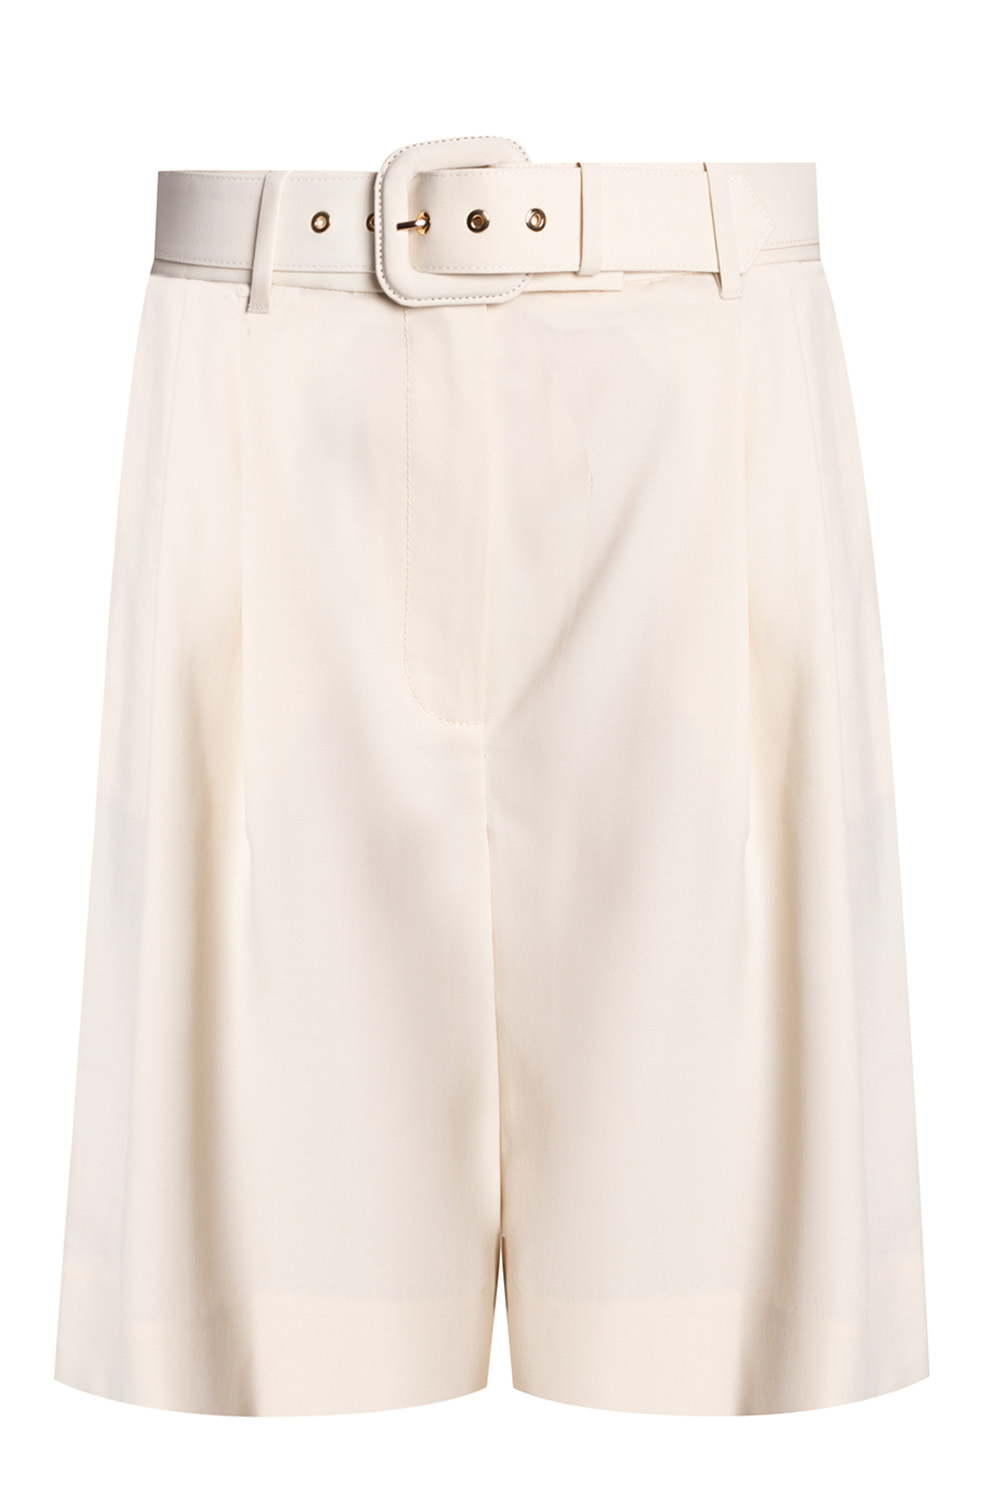 Zimmermann Pleat-front stitch-textured shorts